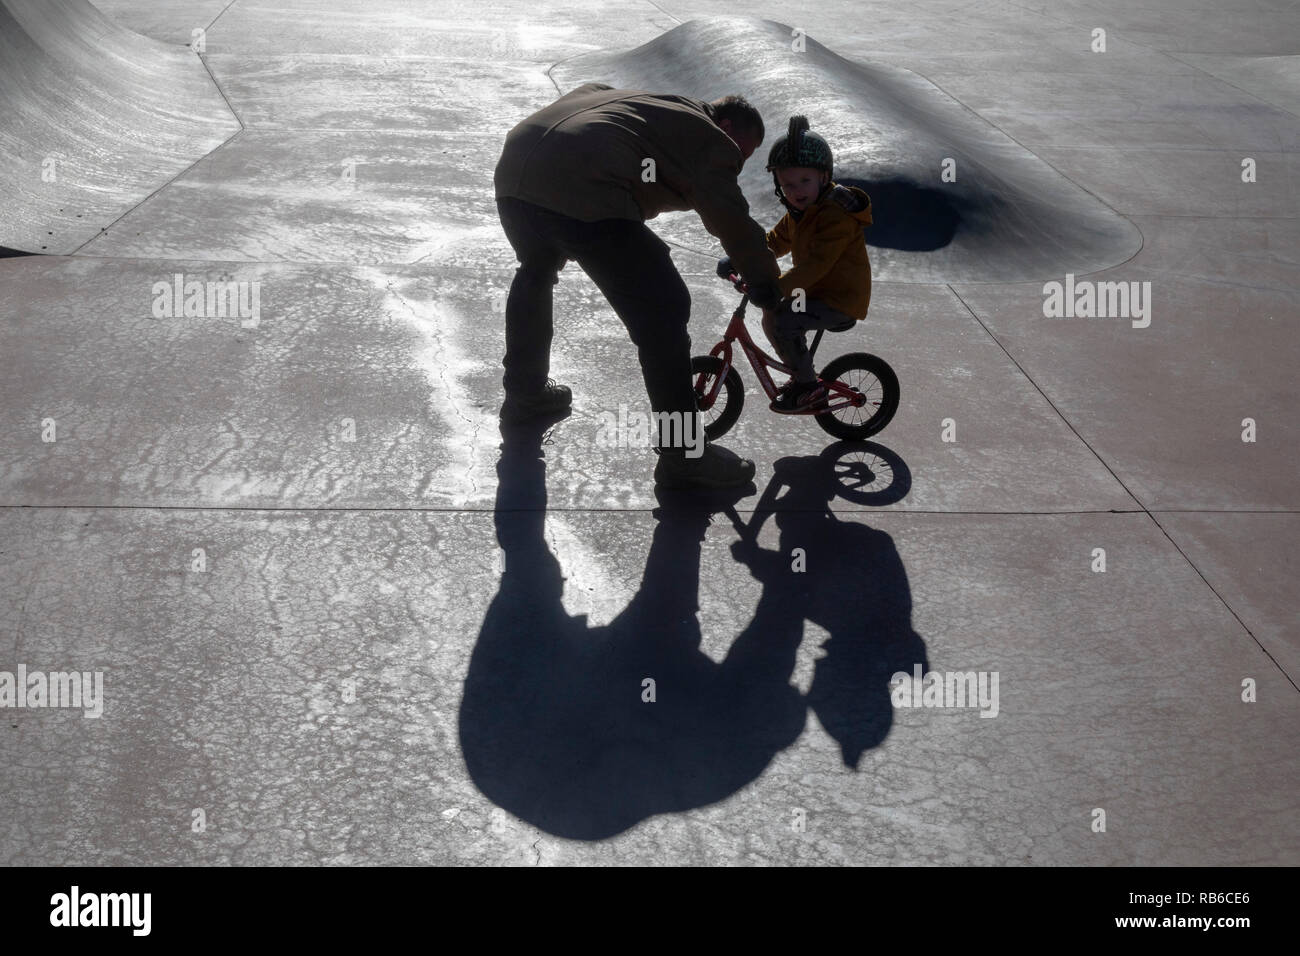 Denver, Colorado - Adam Hjermstad Suor aiuta il suo quattro-anno-vecchio figlio Adam Jr., a guidare il suo equilibrio bike in uno skatepark. Foto Stock